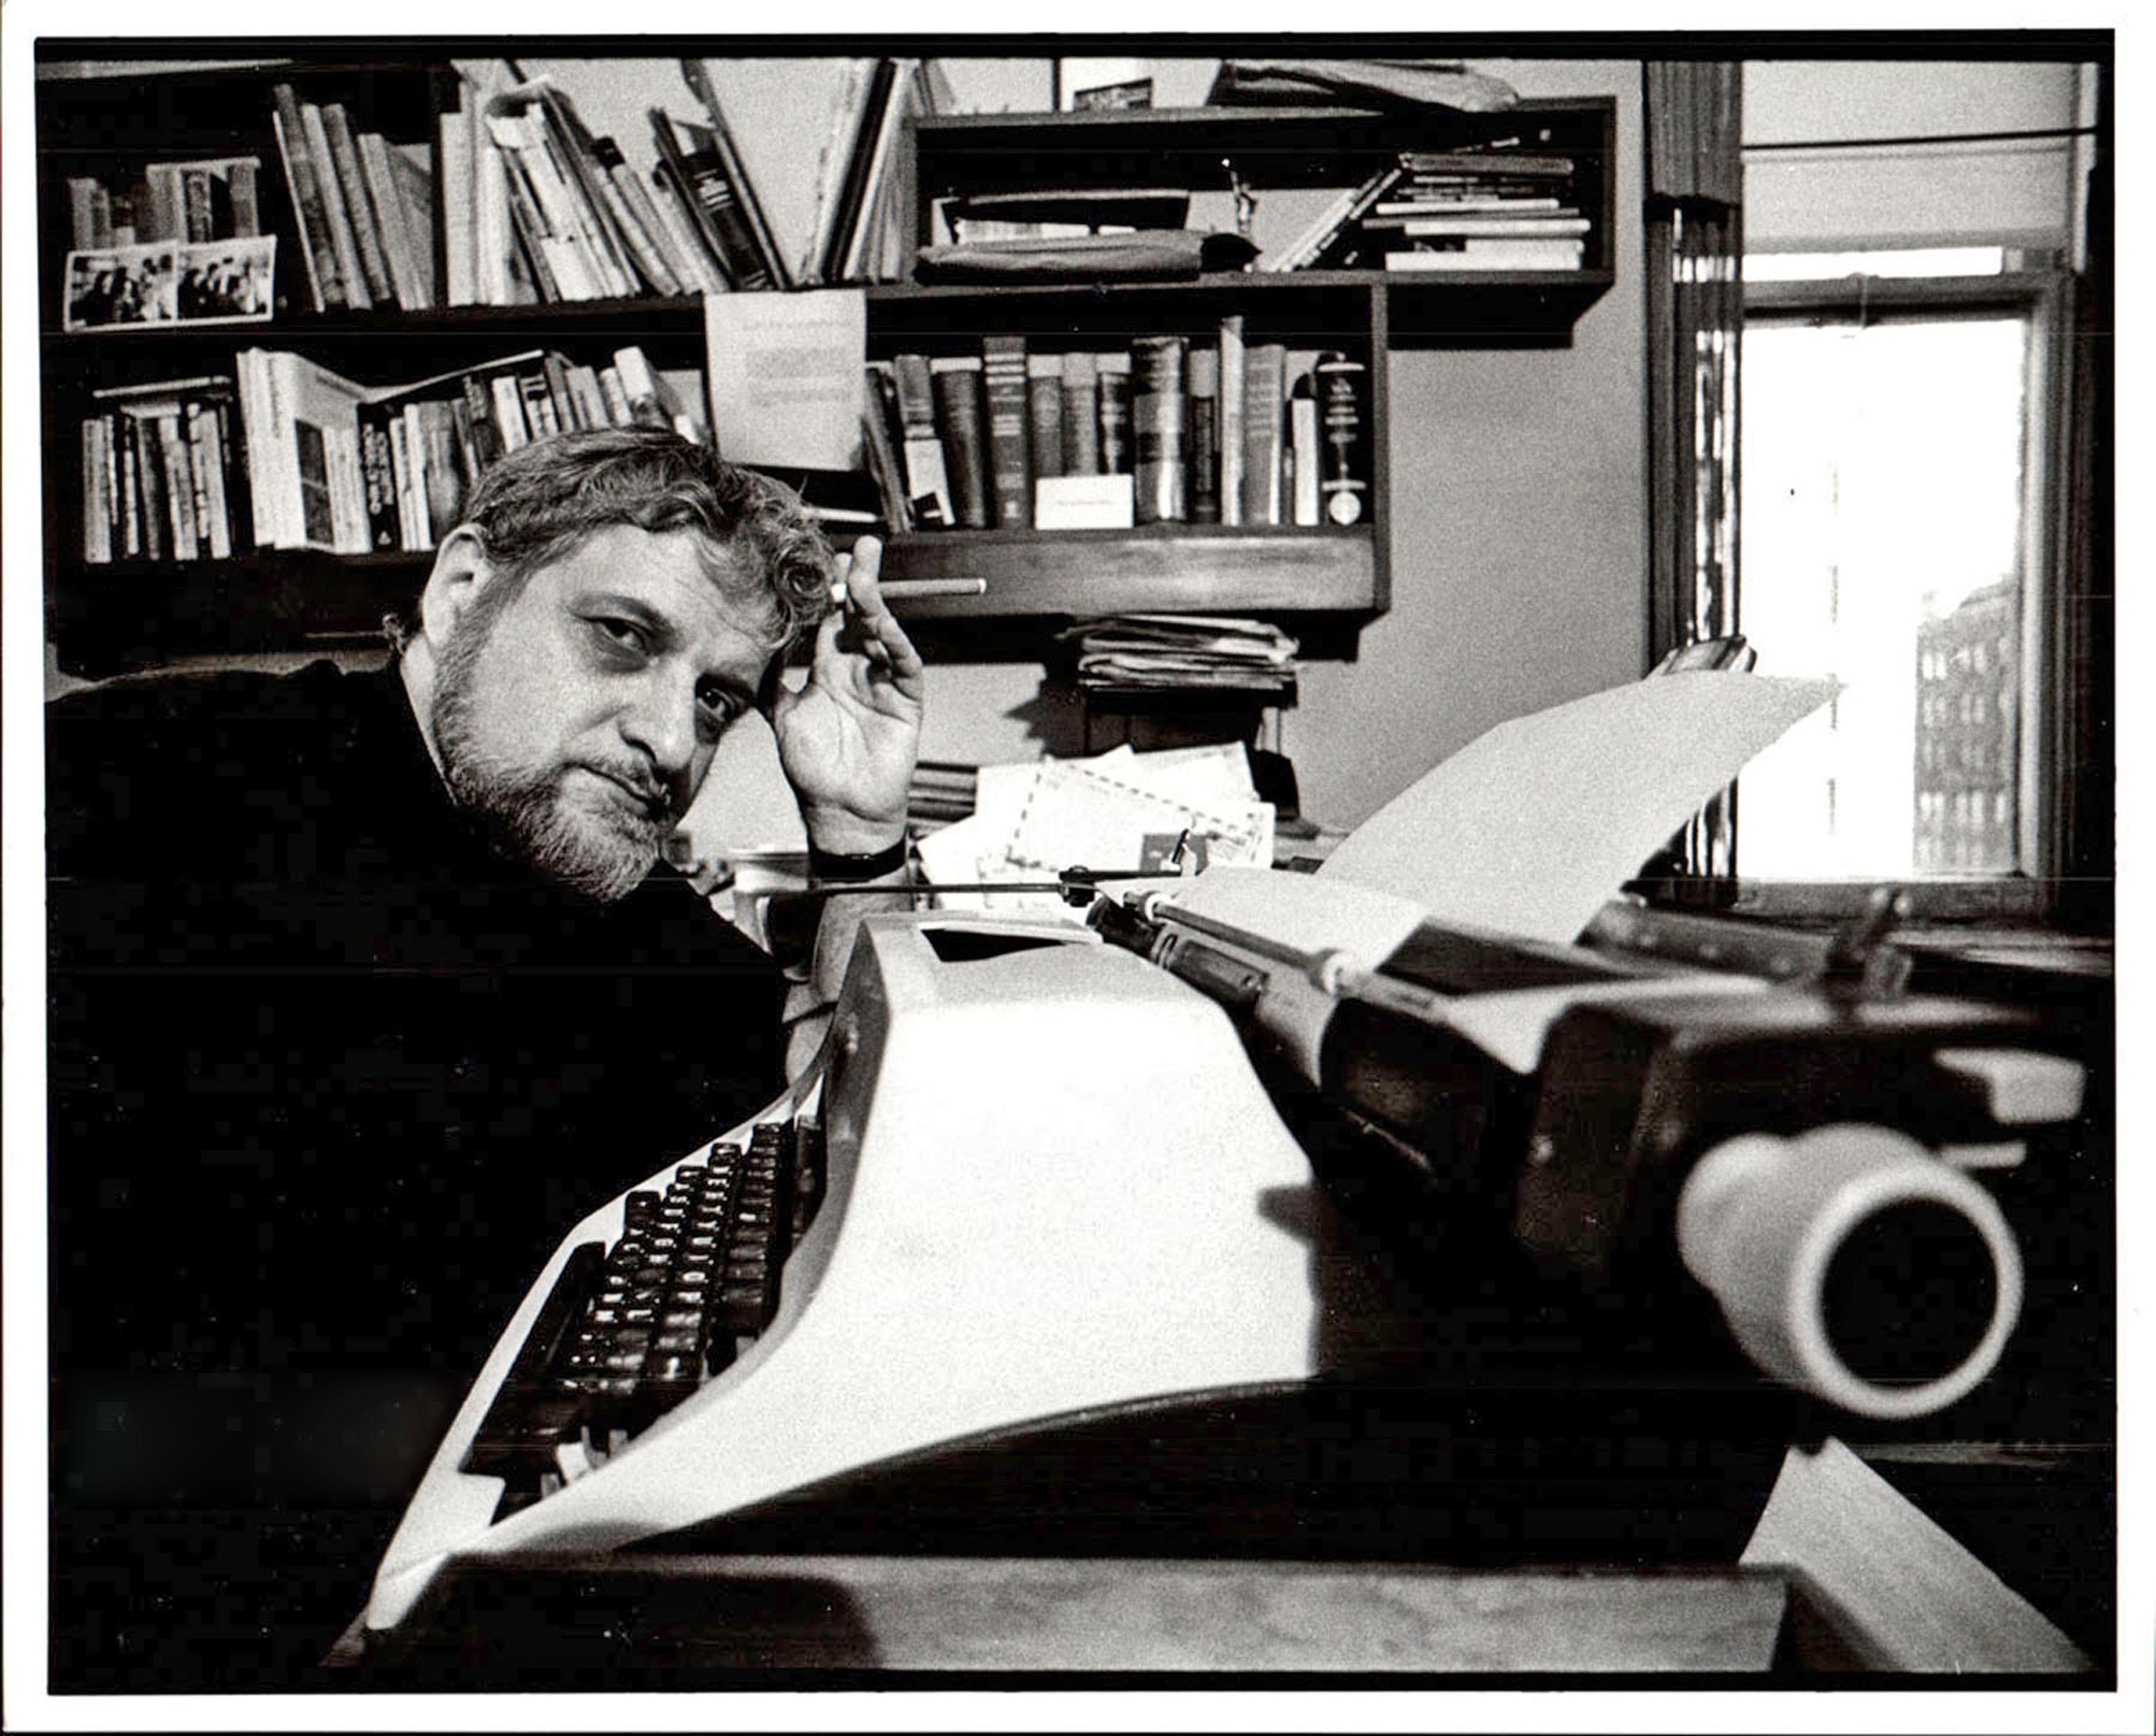 Academy Award-Winning Dramatist/Screenwriter Paddy Chayefsky - Set of 3 8 x 10's - Gray Black and White Photograph by Jack Mitchell